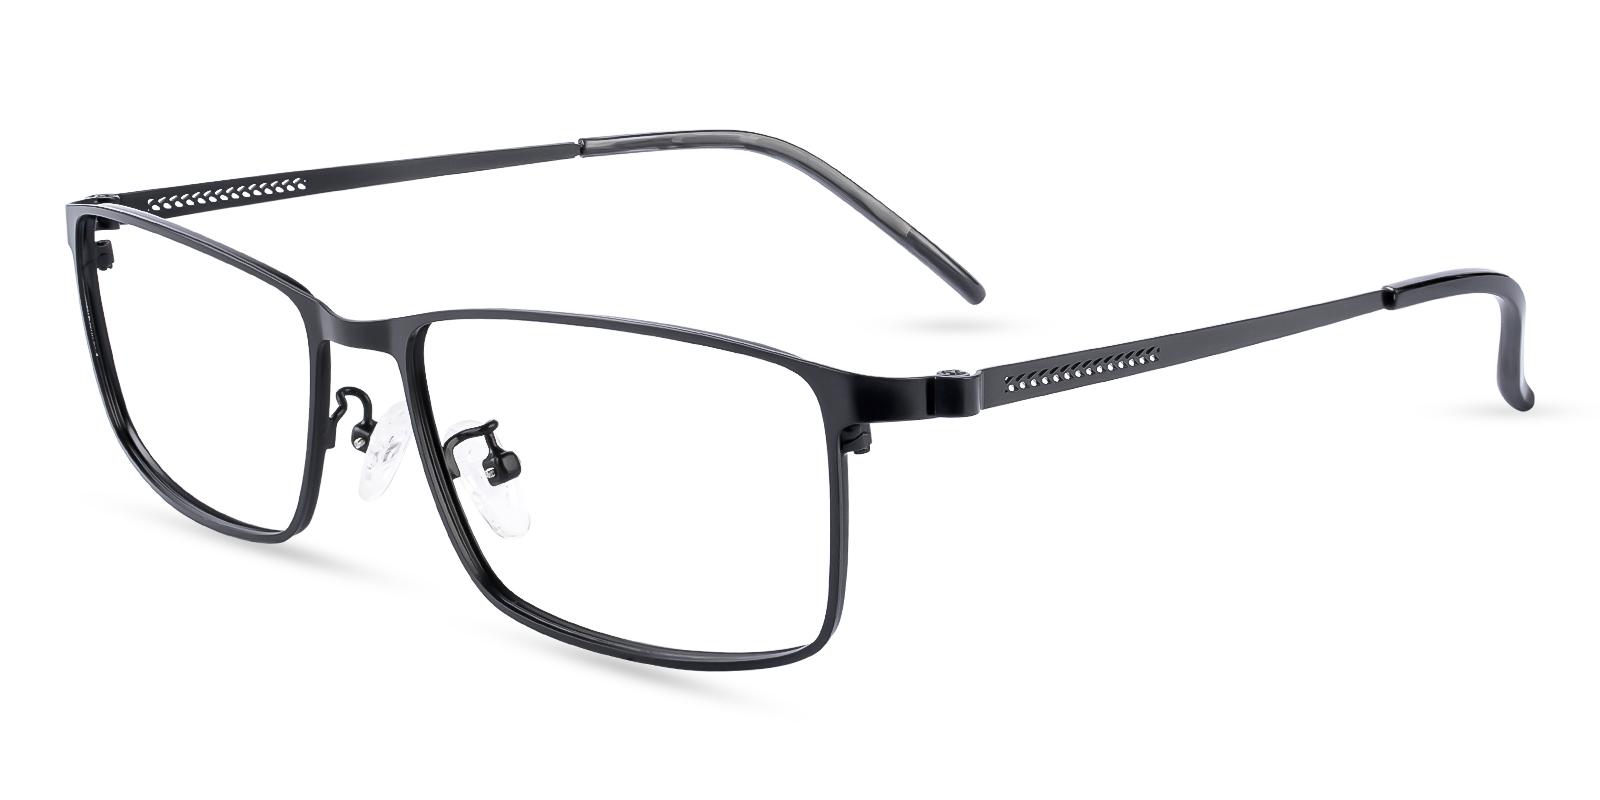 Daniel Black Metal Eyeglasses , NosePads Frames from ABBE Glasses